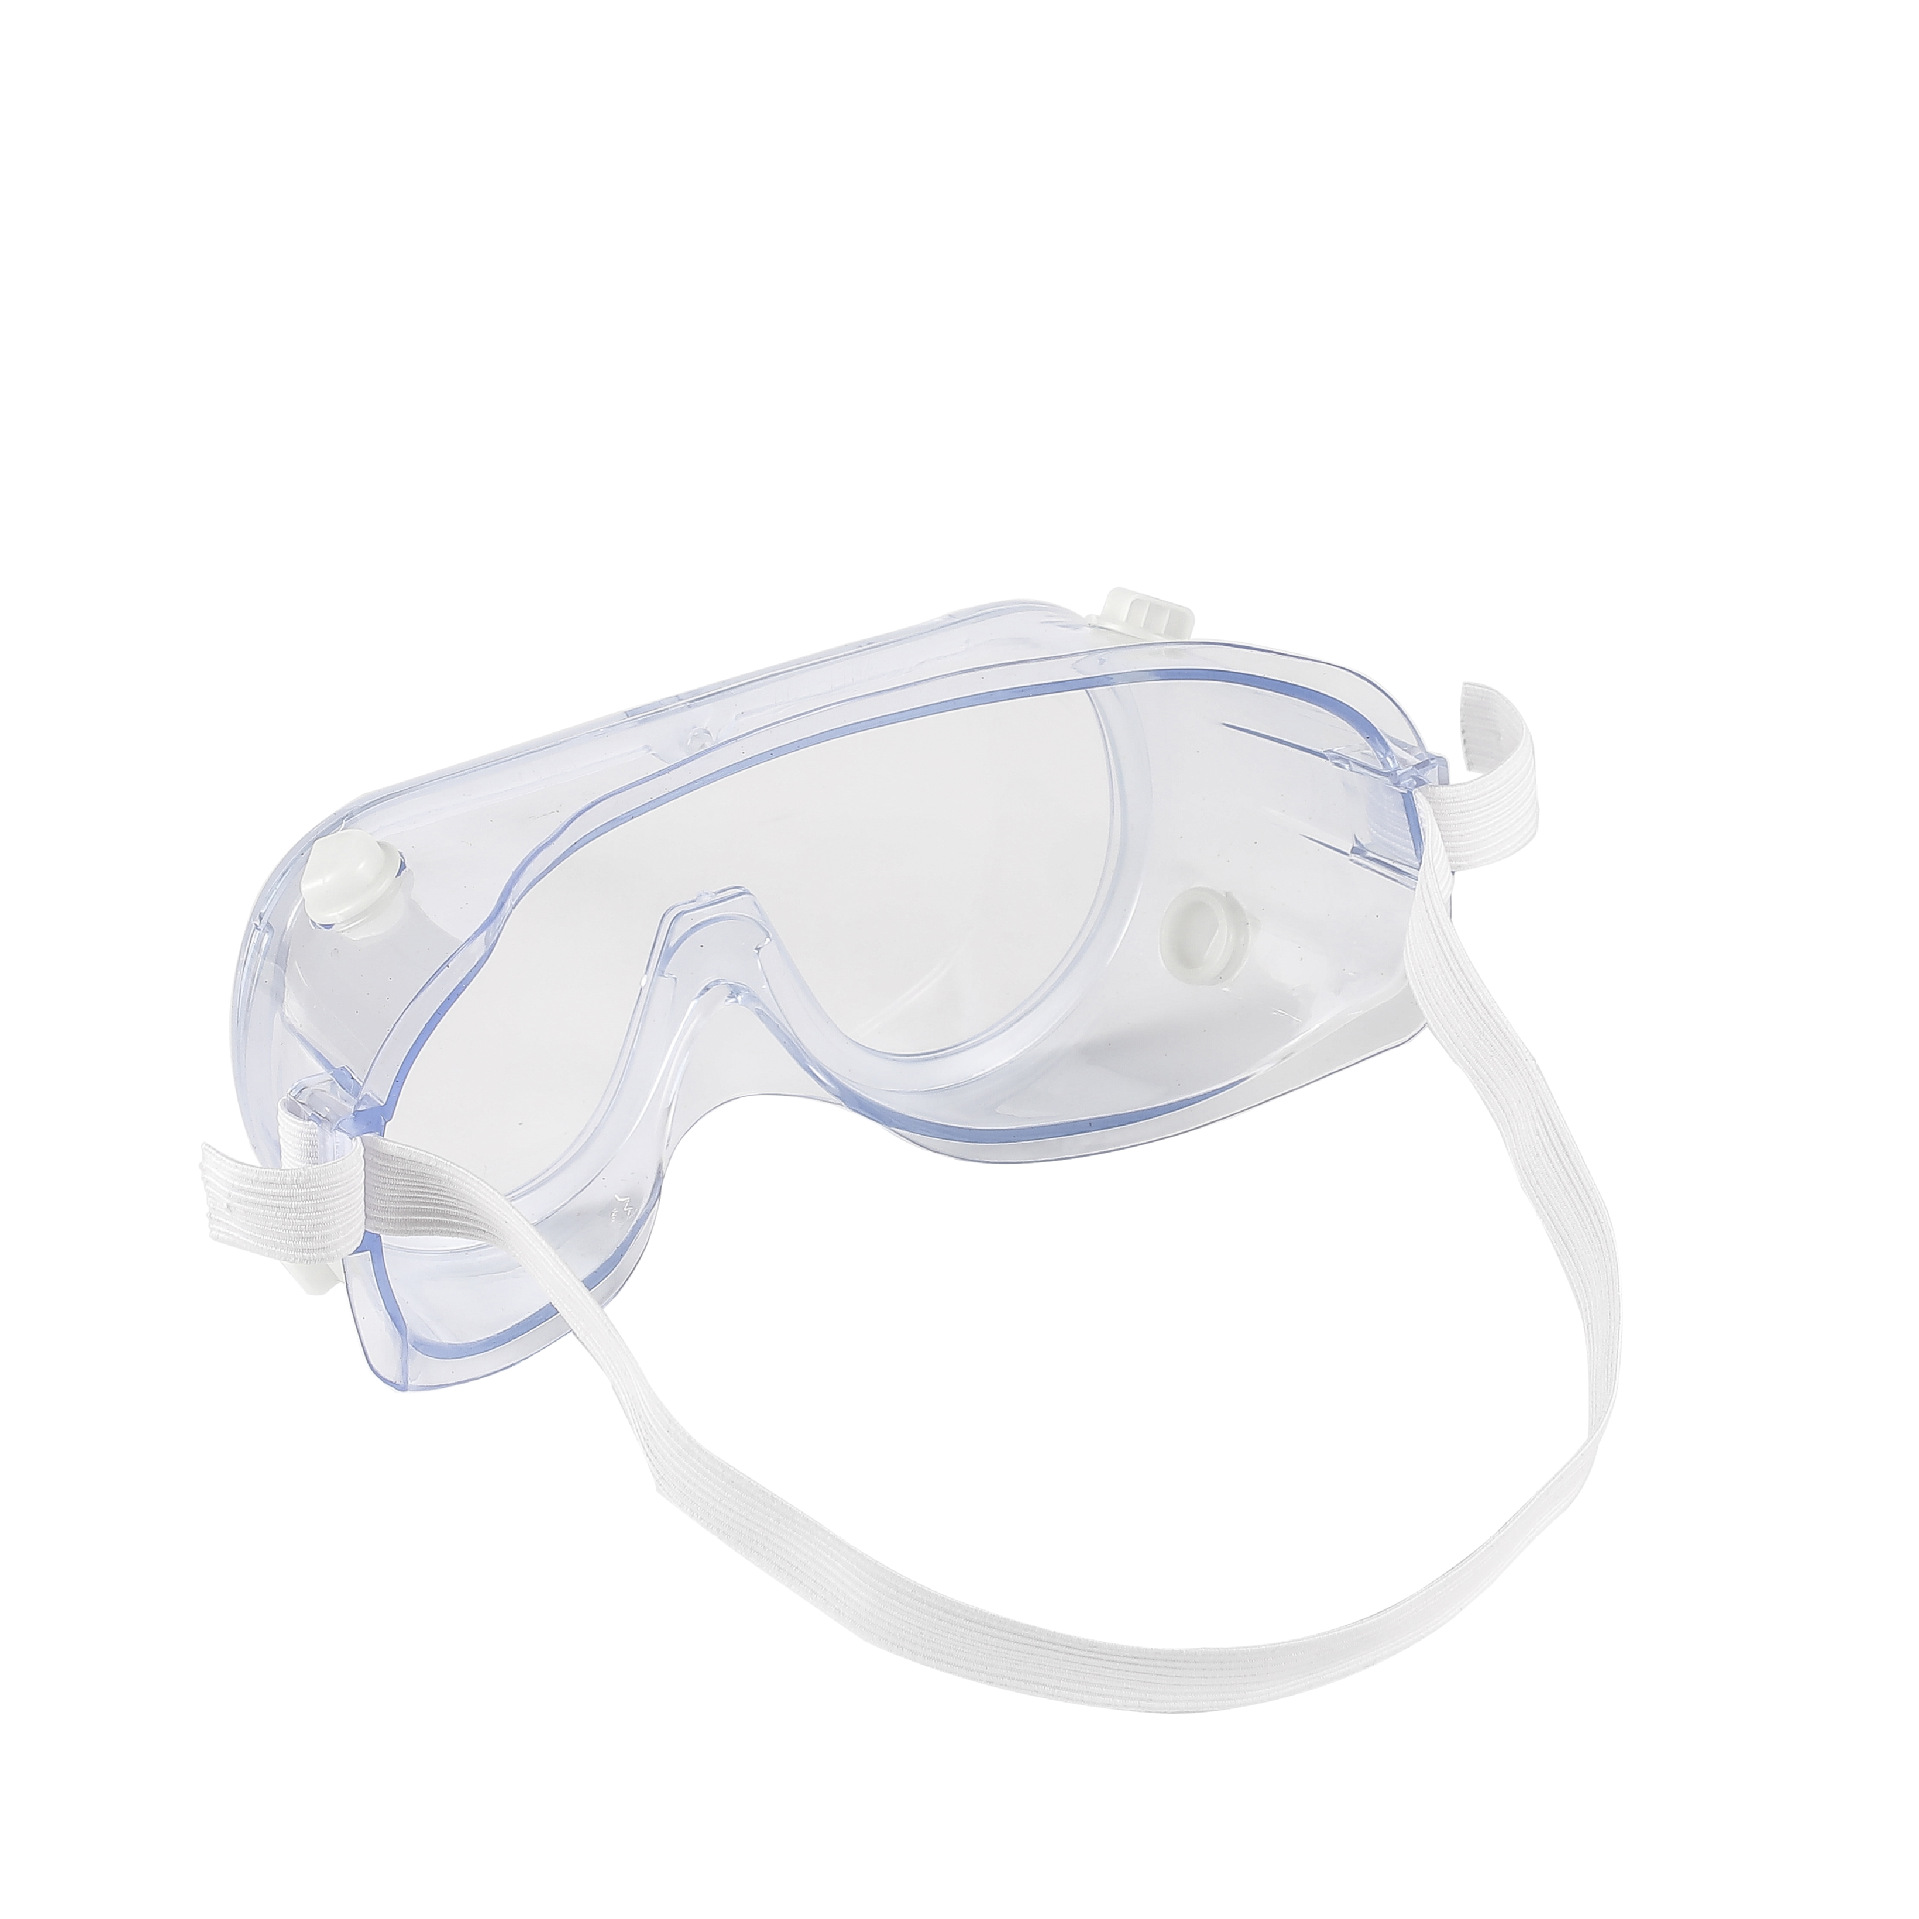 新款防雾pc镜片安全眼镜护目镜防冲击防飞溅工作骑行眼镜防风防紫外线防护眼镜